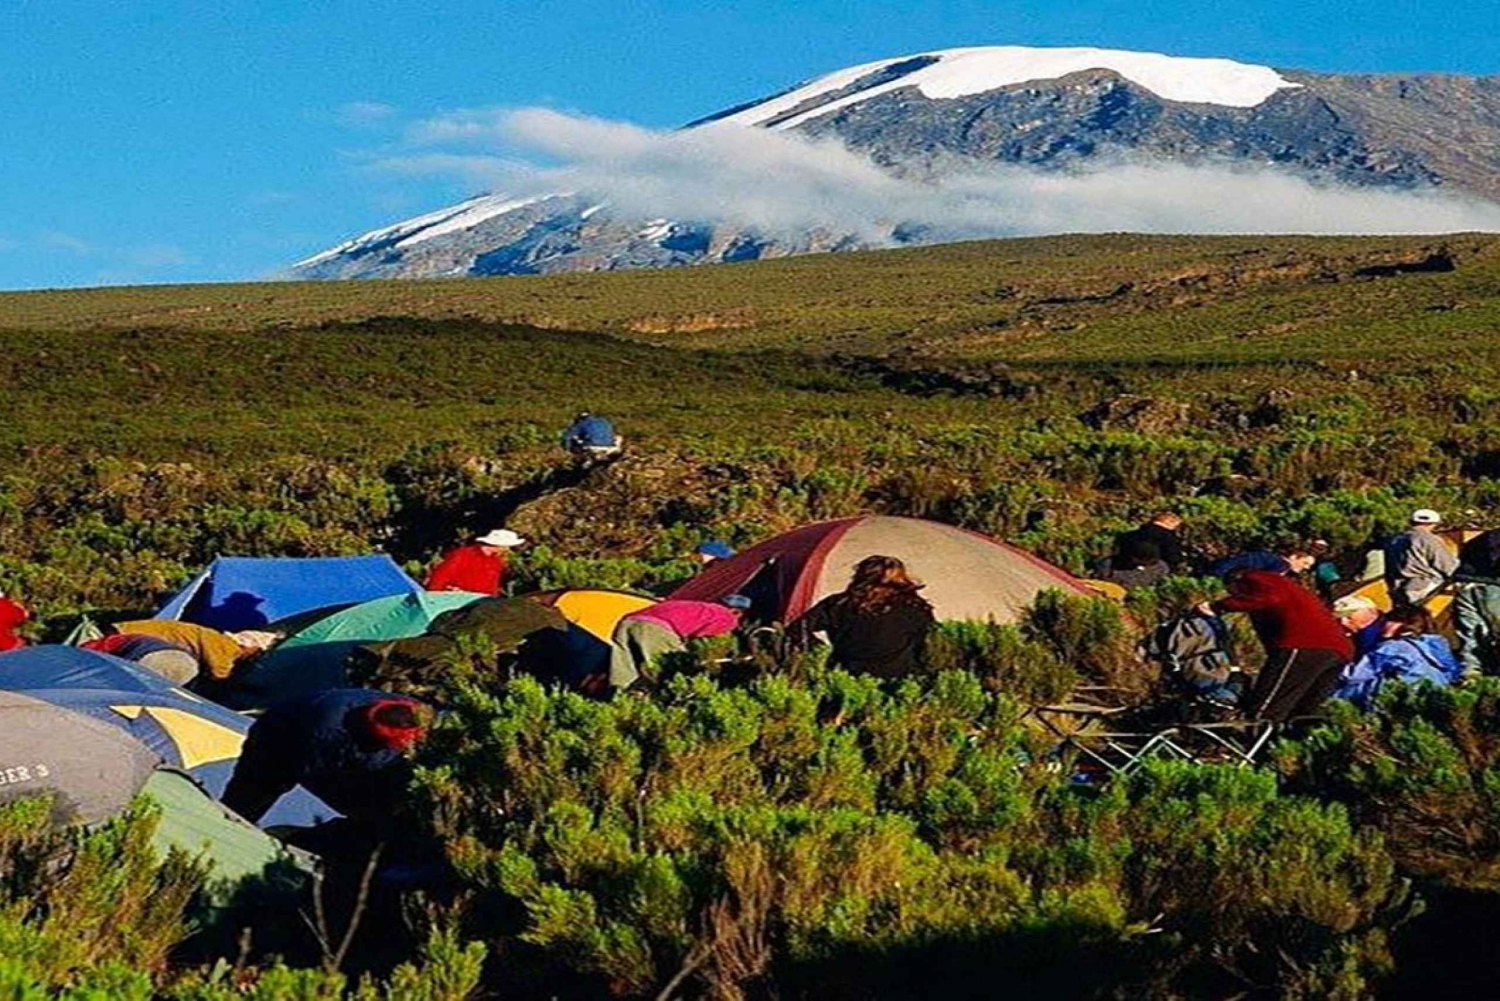 6 Tage Kilimandscharo-Besteigung über die Machame-Route